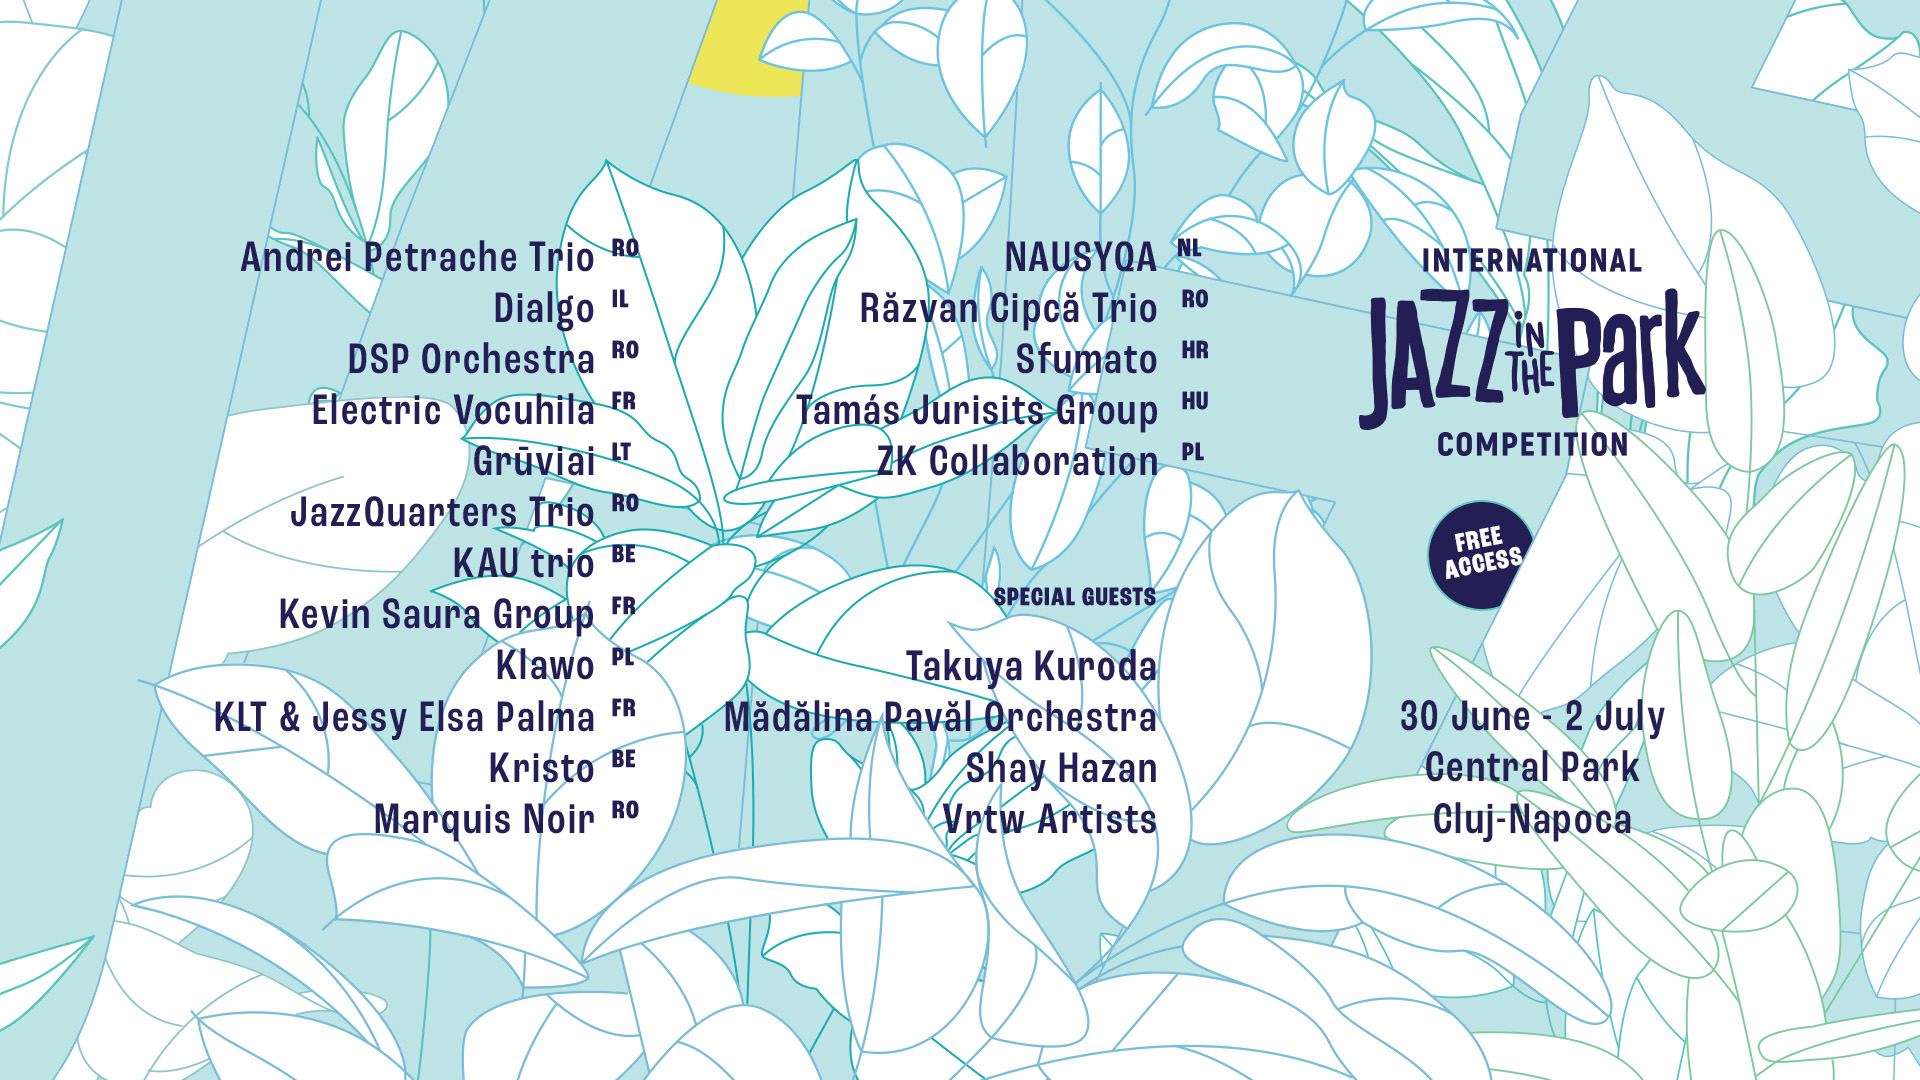 În weekend, talentele din jazz se adună la Cluj, la Jazz in the Park Competition